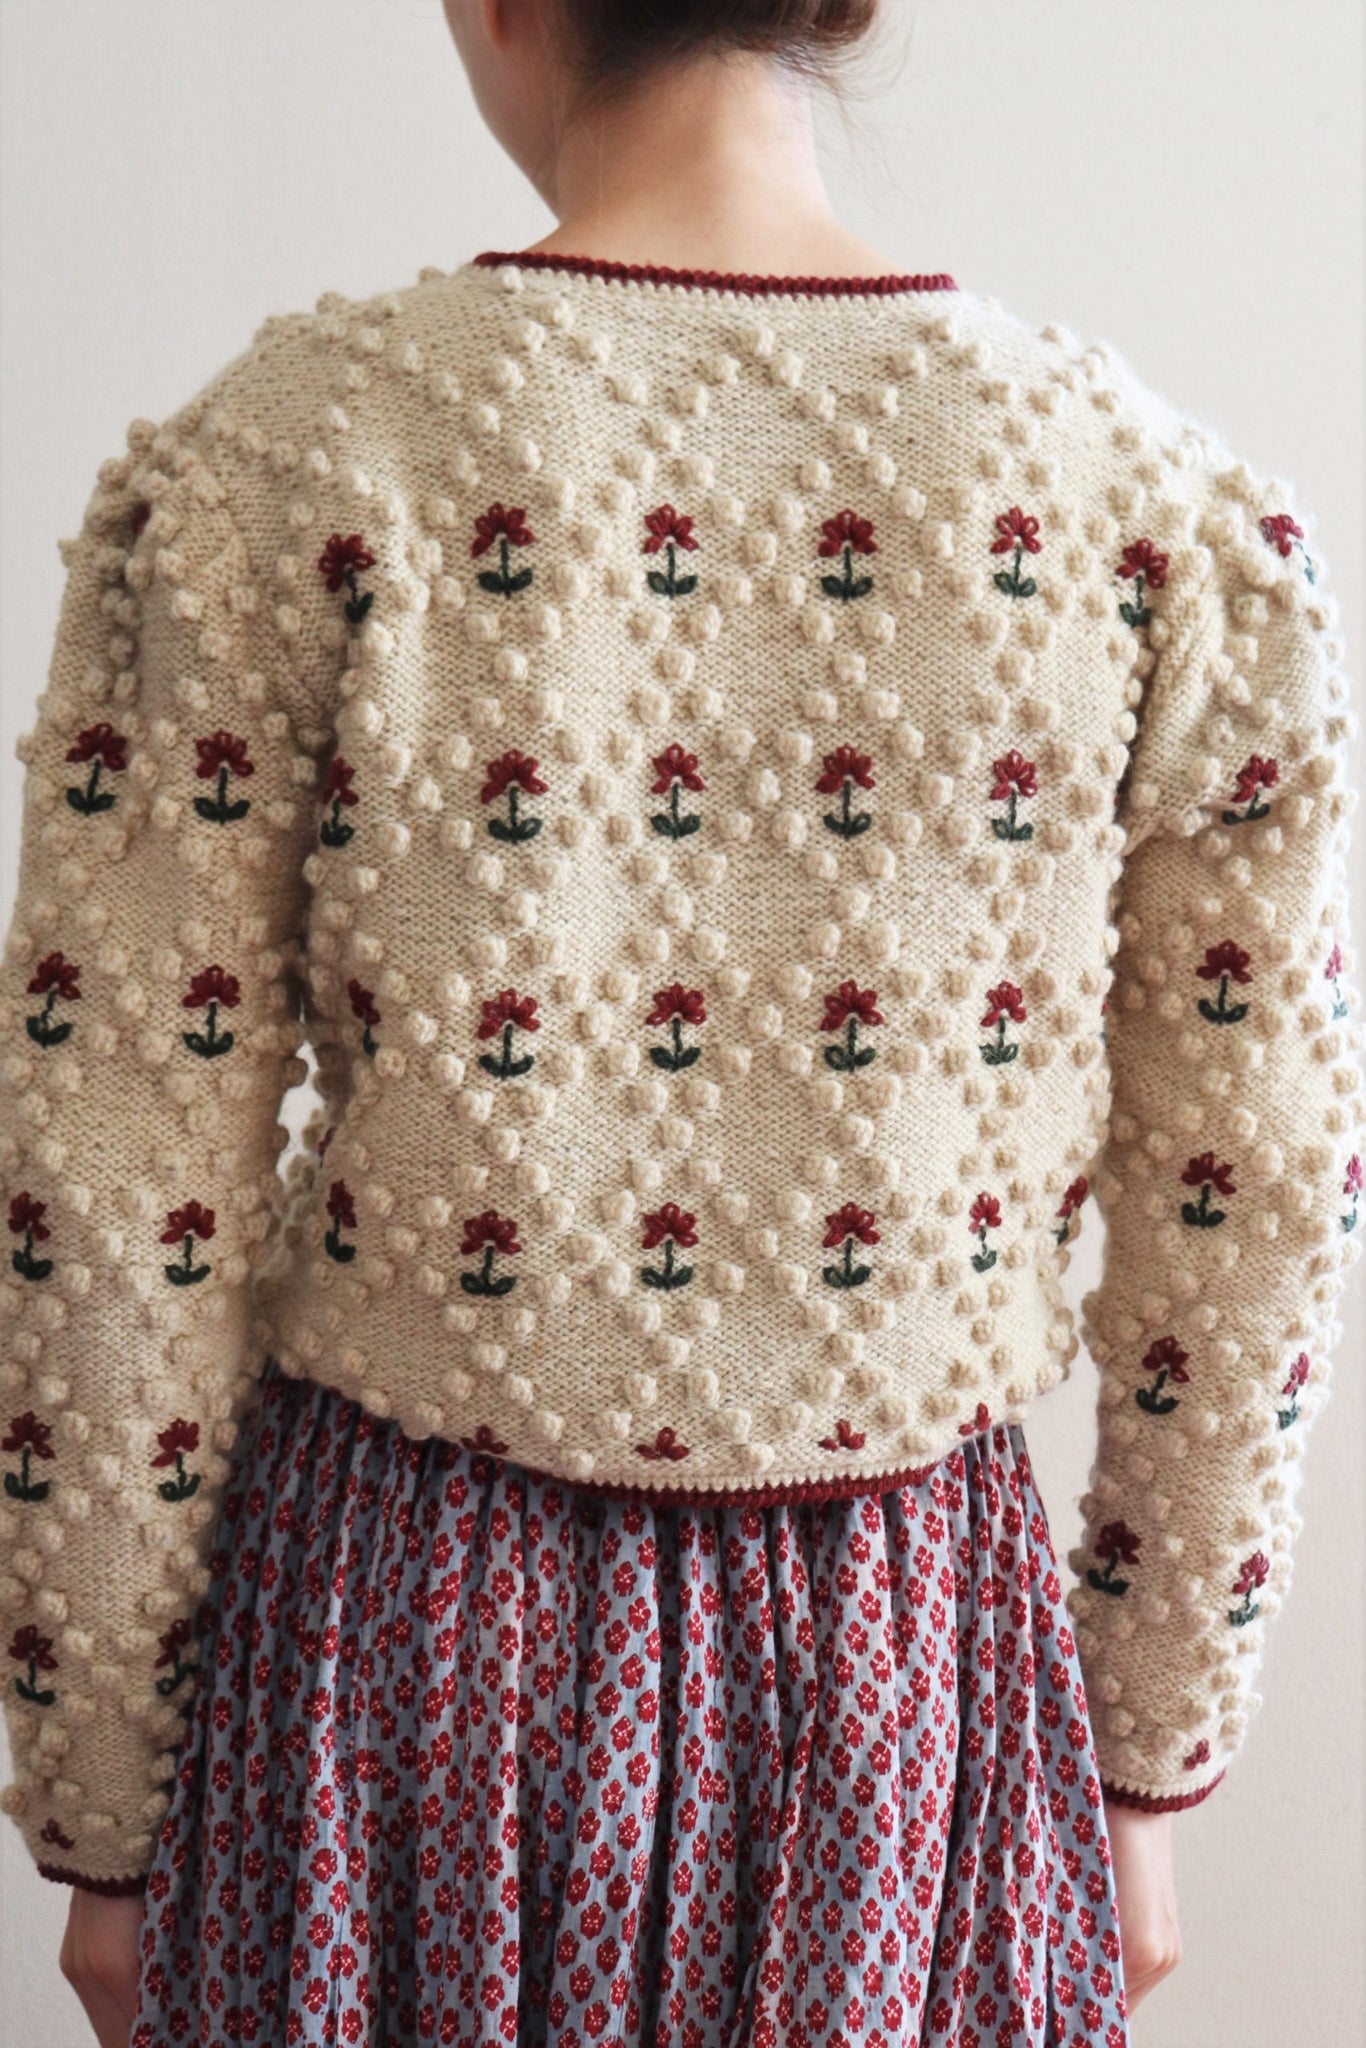 Austrian Hand Knit Cardigan Dark Cherry Red Flower Embroidered